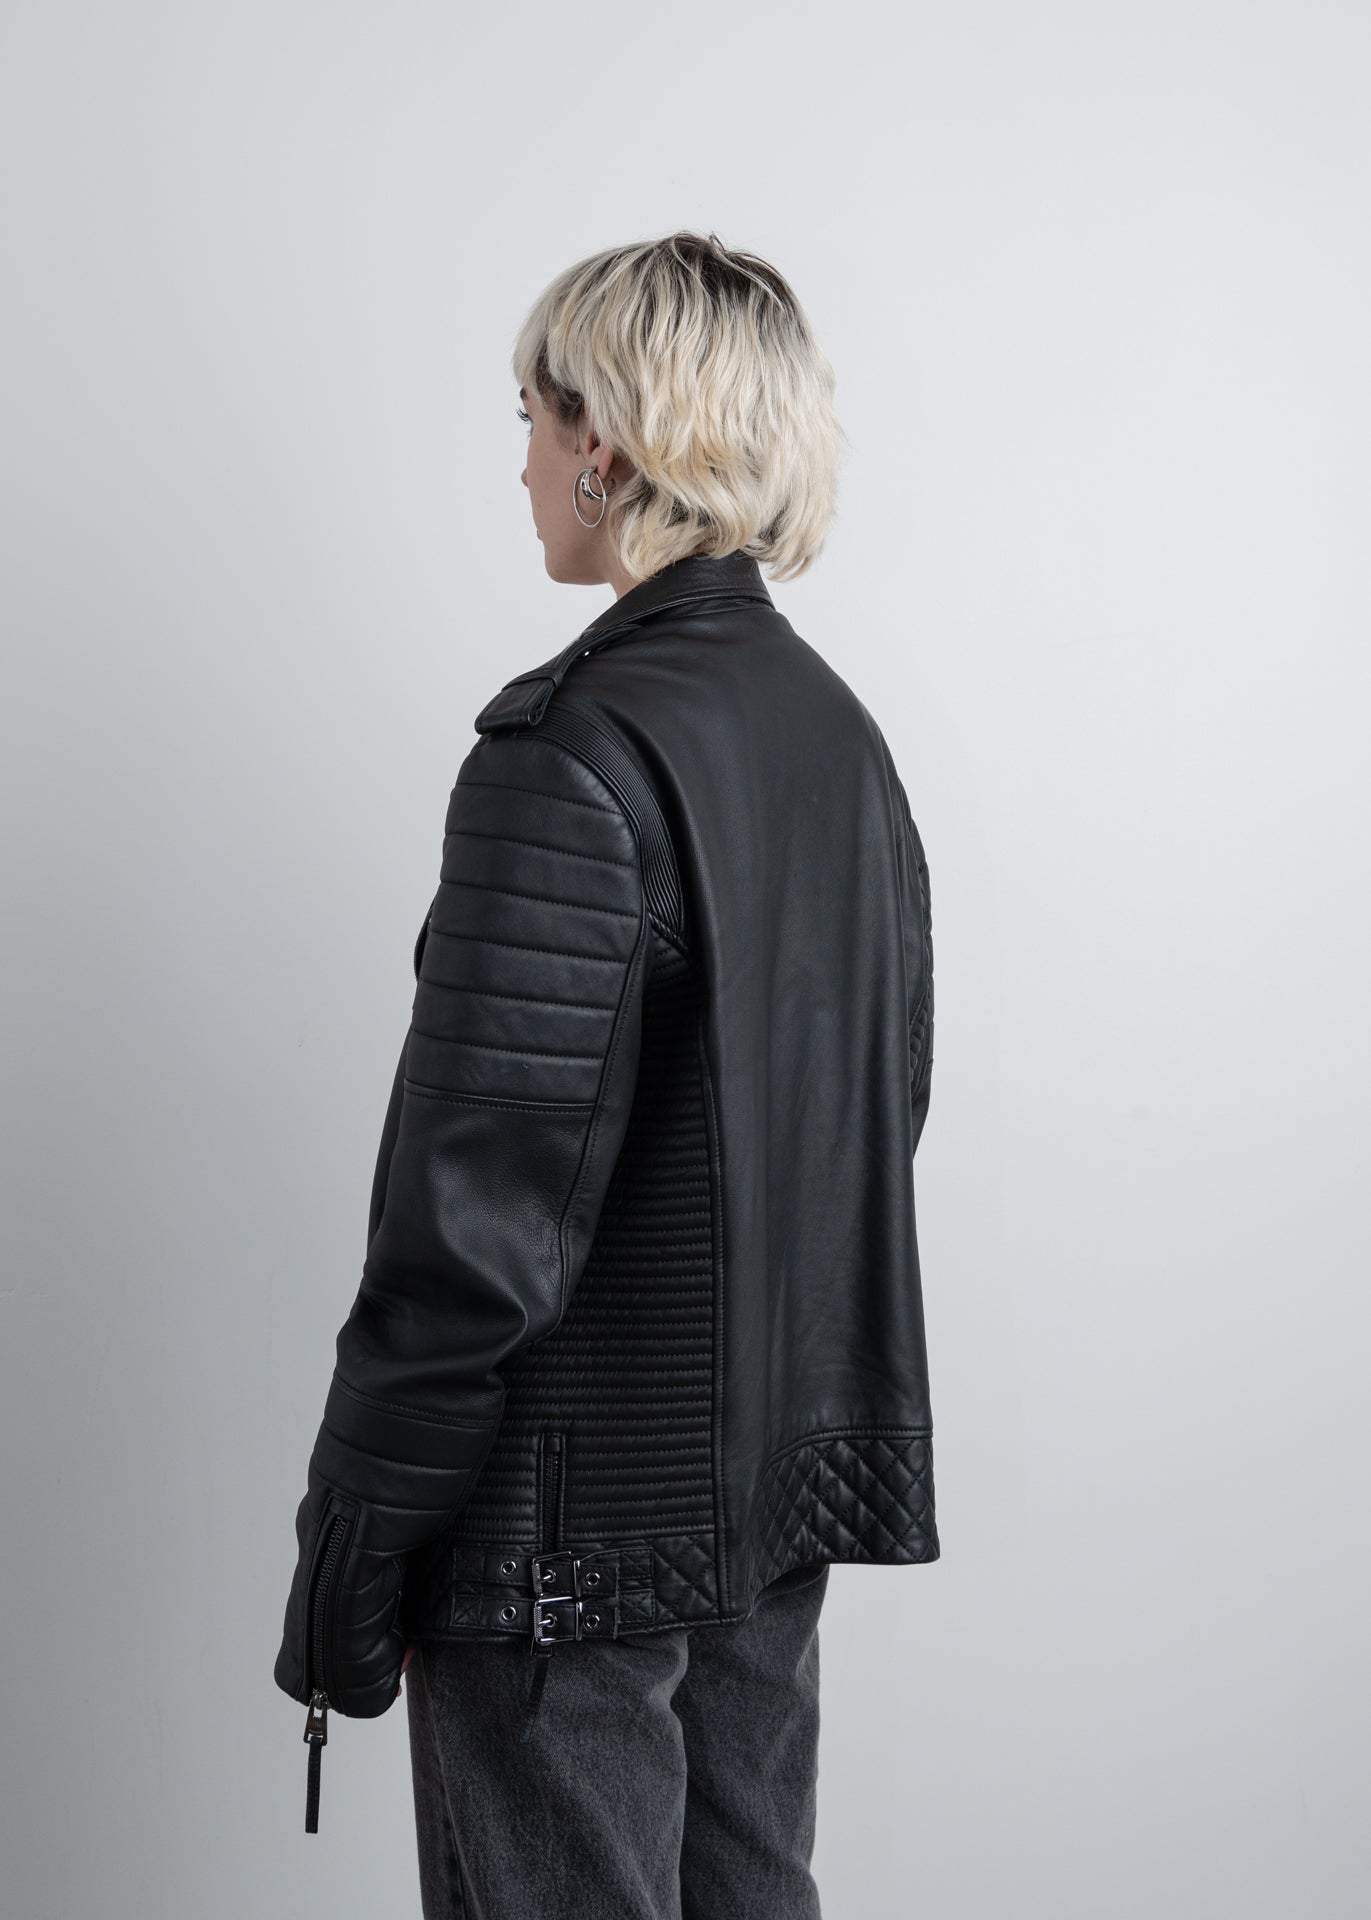 BODA SKINS Matte Black Leather Jacket